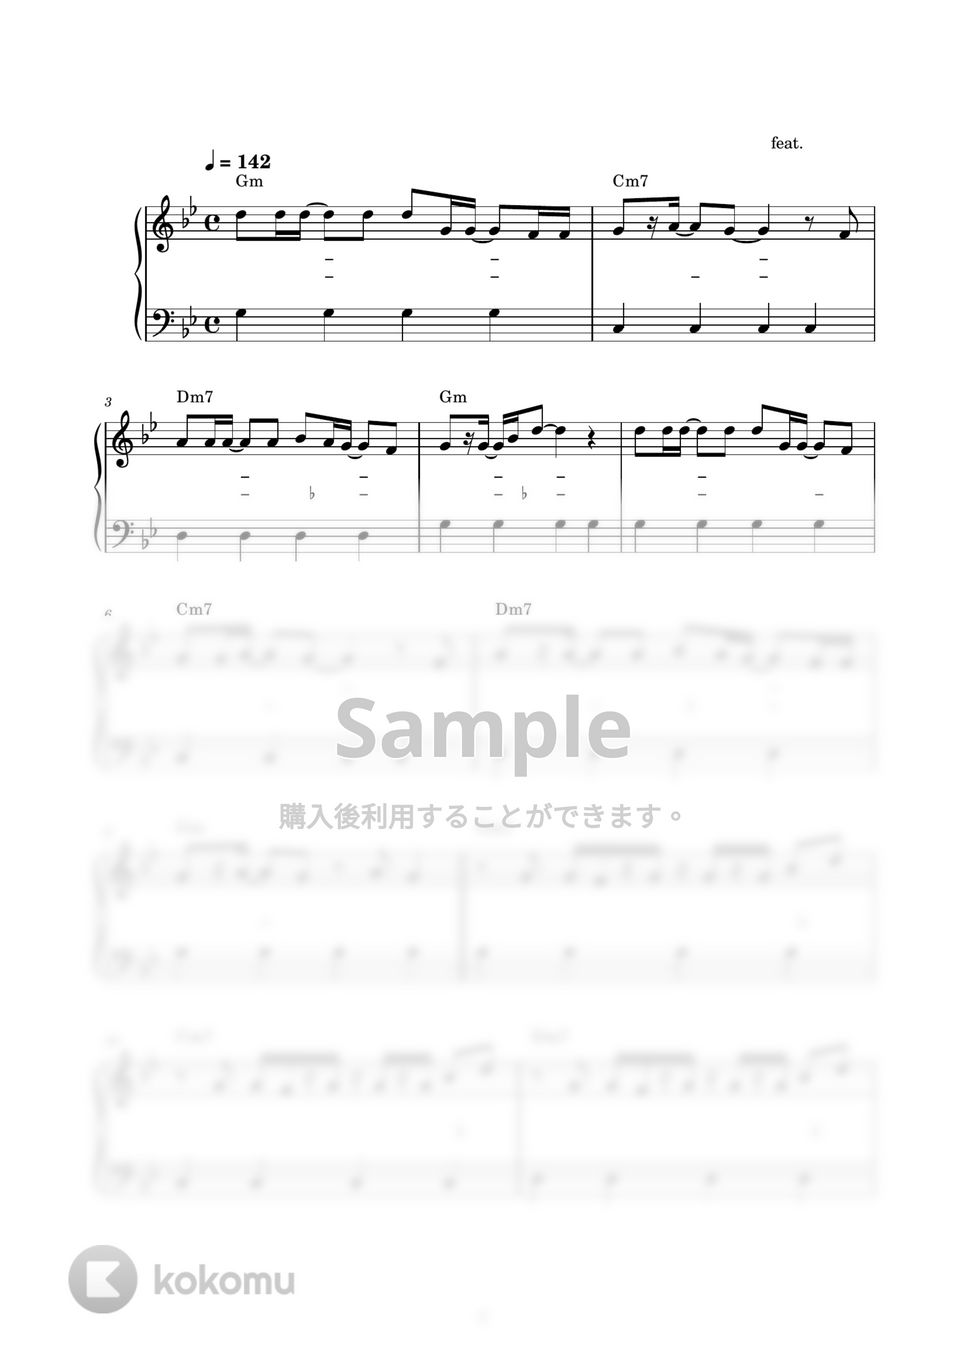 ピノキオピー feat. 初音ミク - 神っぽいな (ピアノ楽譜 / かんたん両手 / 歌詞付き / ドレミ付き / 初心者向き) by piano.tokyo